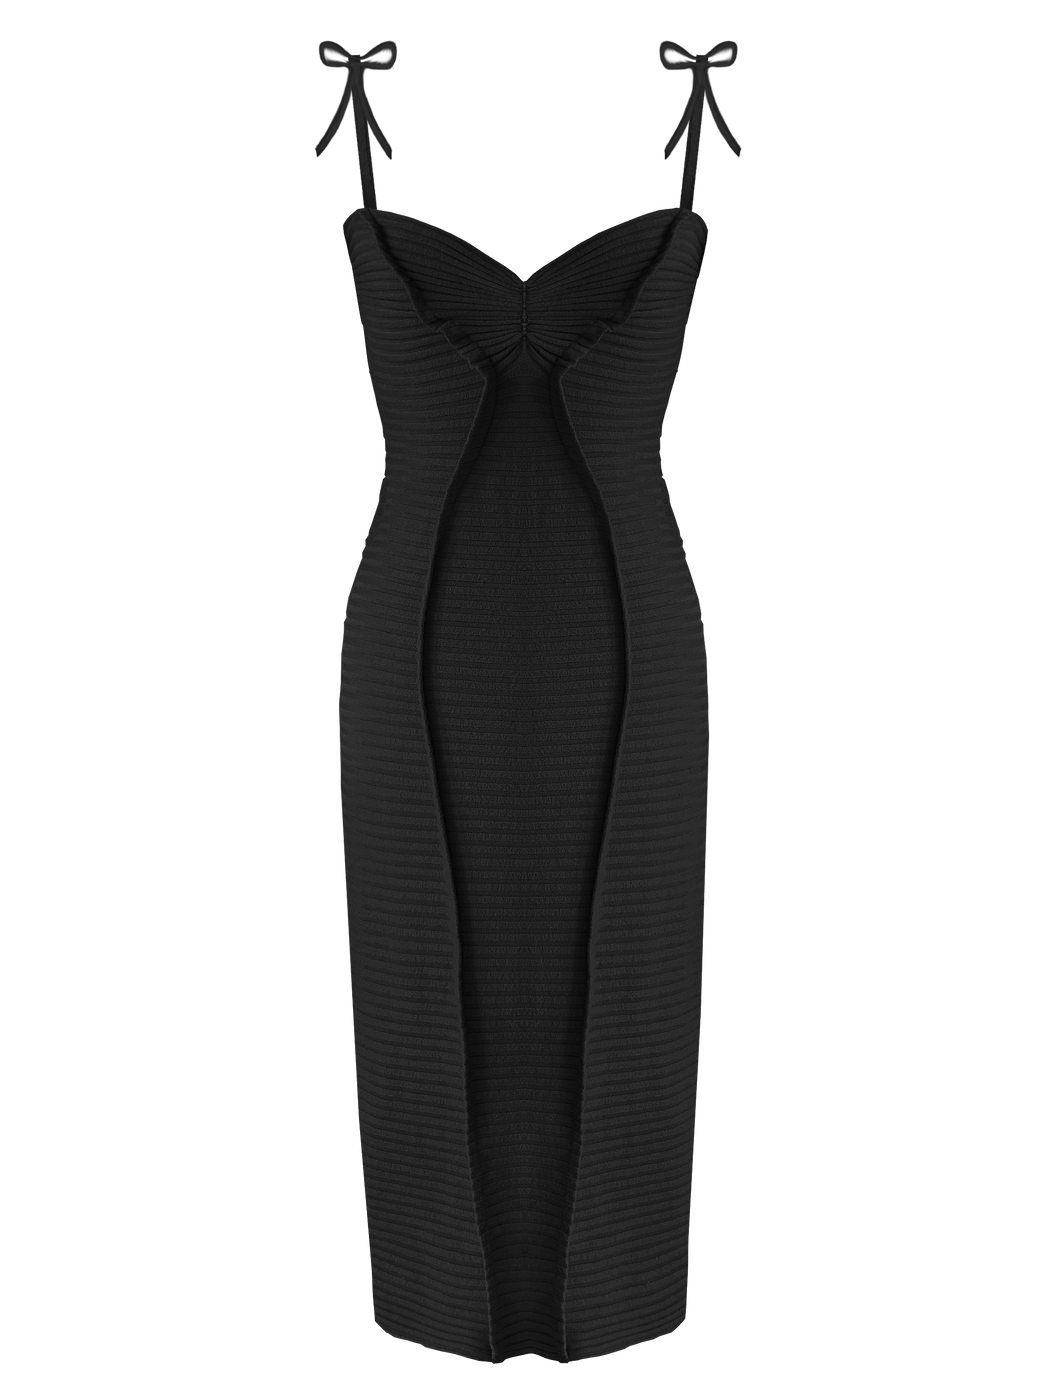 Georgia Hardinge Gaia Dress Black midi bodycon fitted tie bow strappy viscose jersey rib